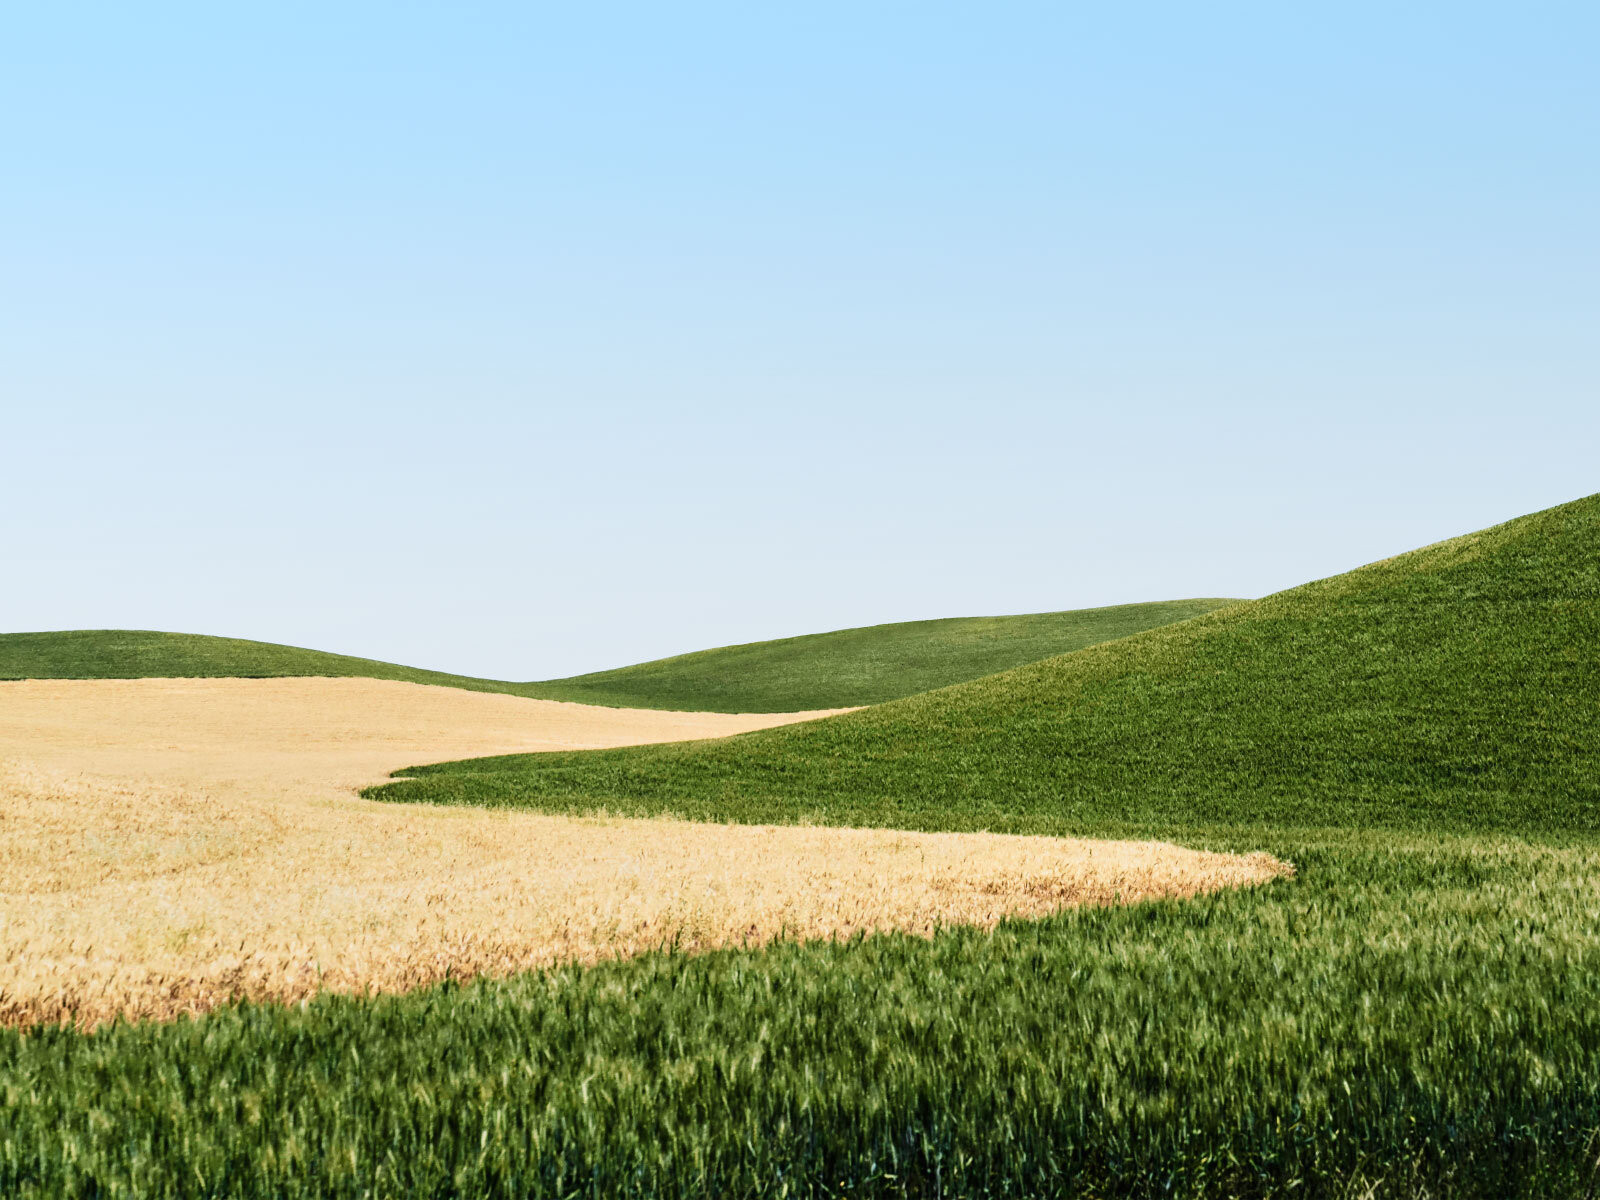 Erinnert an das Windows XP Hintergrund Bild. Hier ein Feld aus Washington State USA.